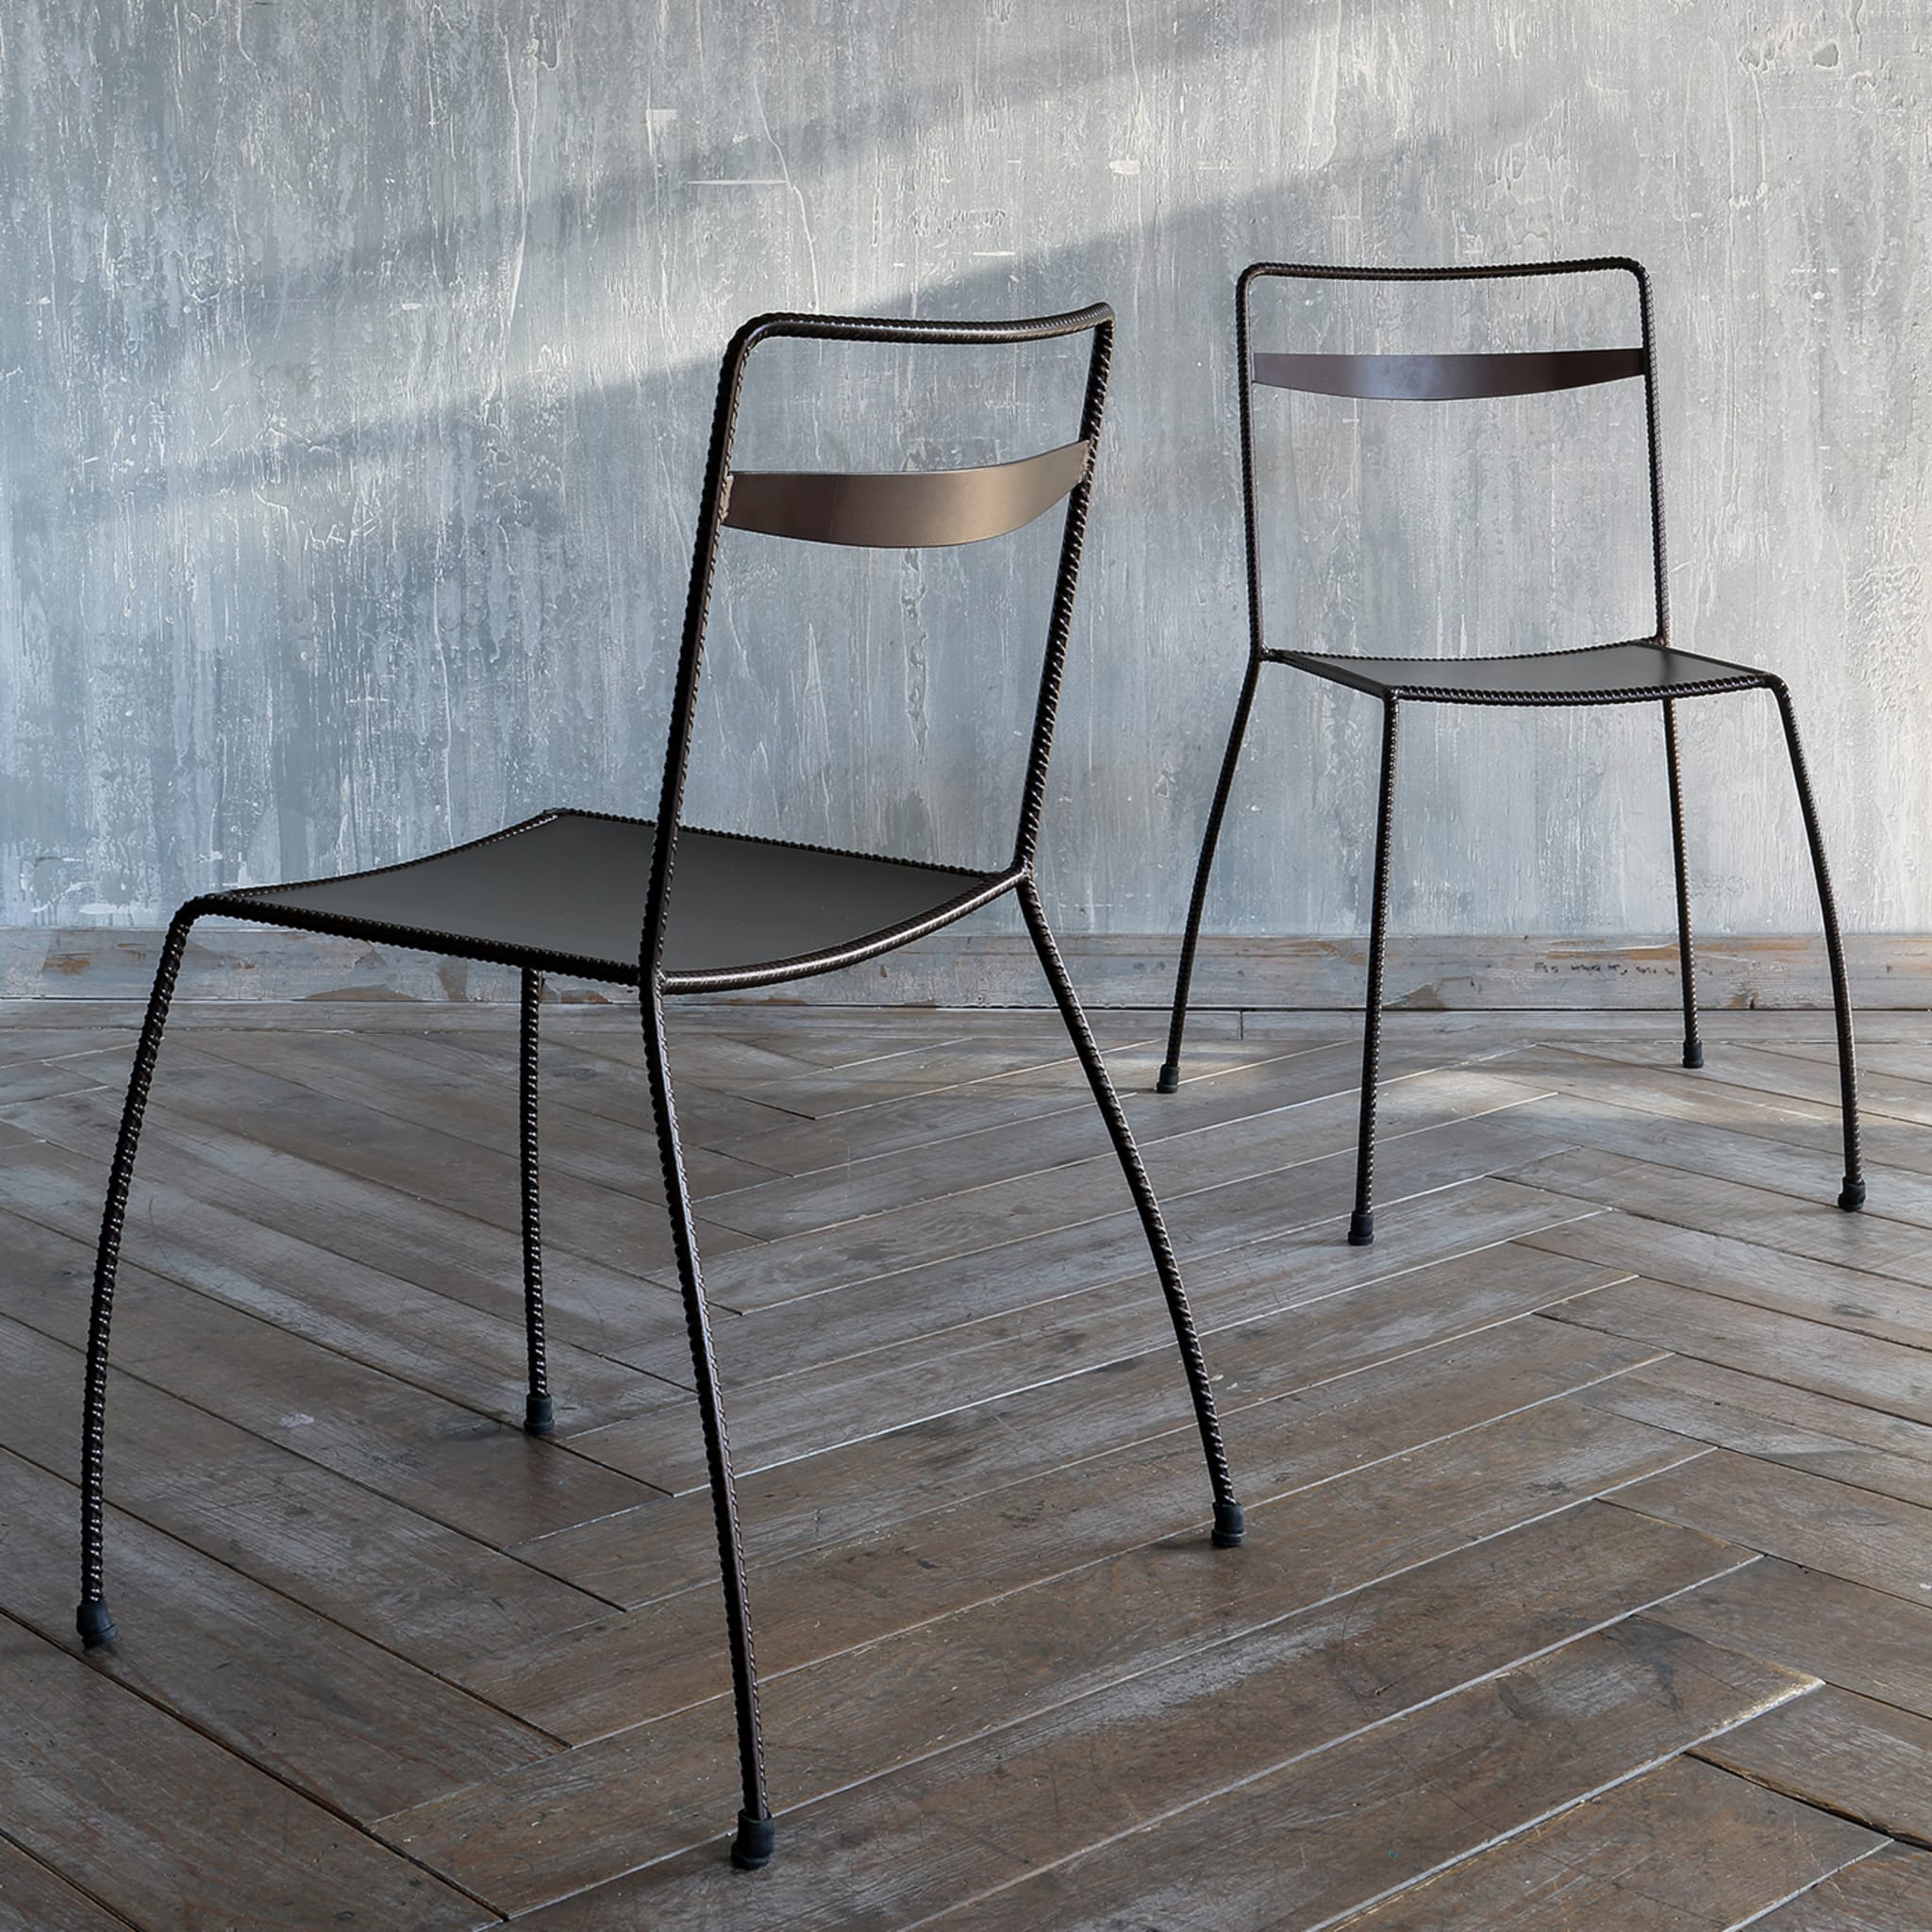 Tondella Brown Chair by Maurizio Peregalli - Alternative view 3